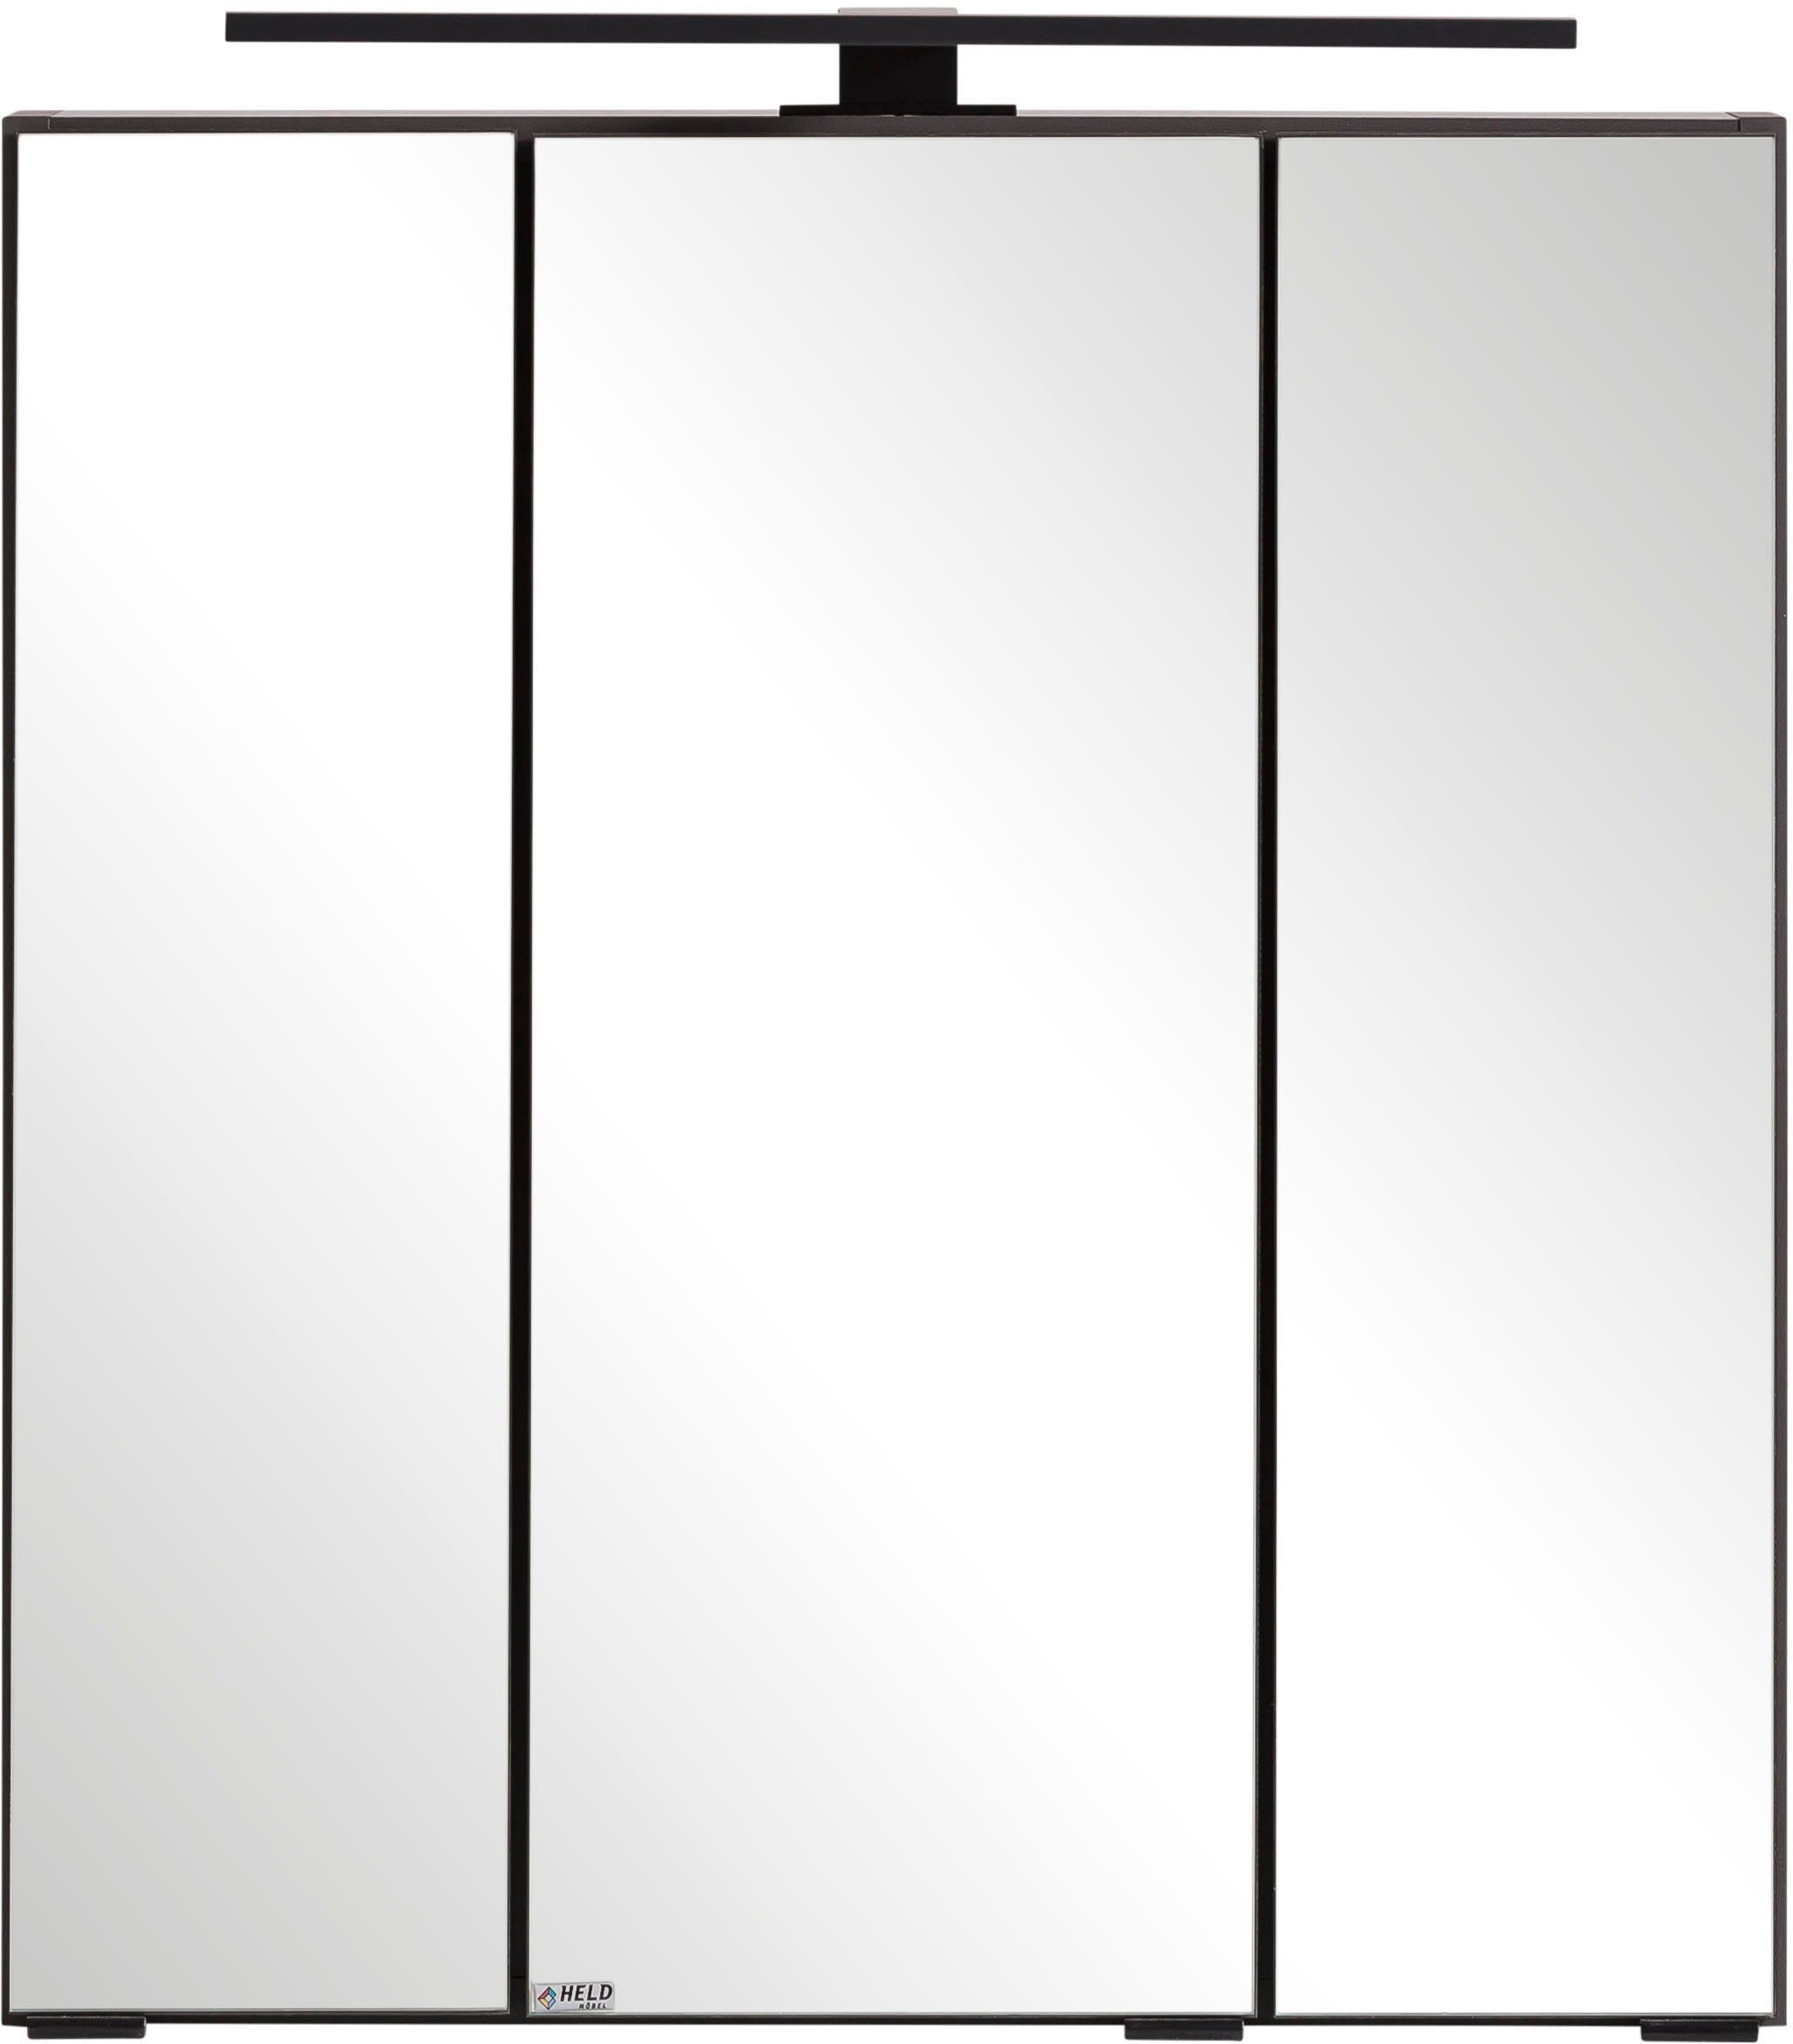 HELD MÖBEL Spiegelschrank Lana Badmöbel, 60 cm breit graphit | graphit | Spiegelschränke